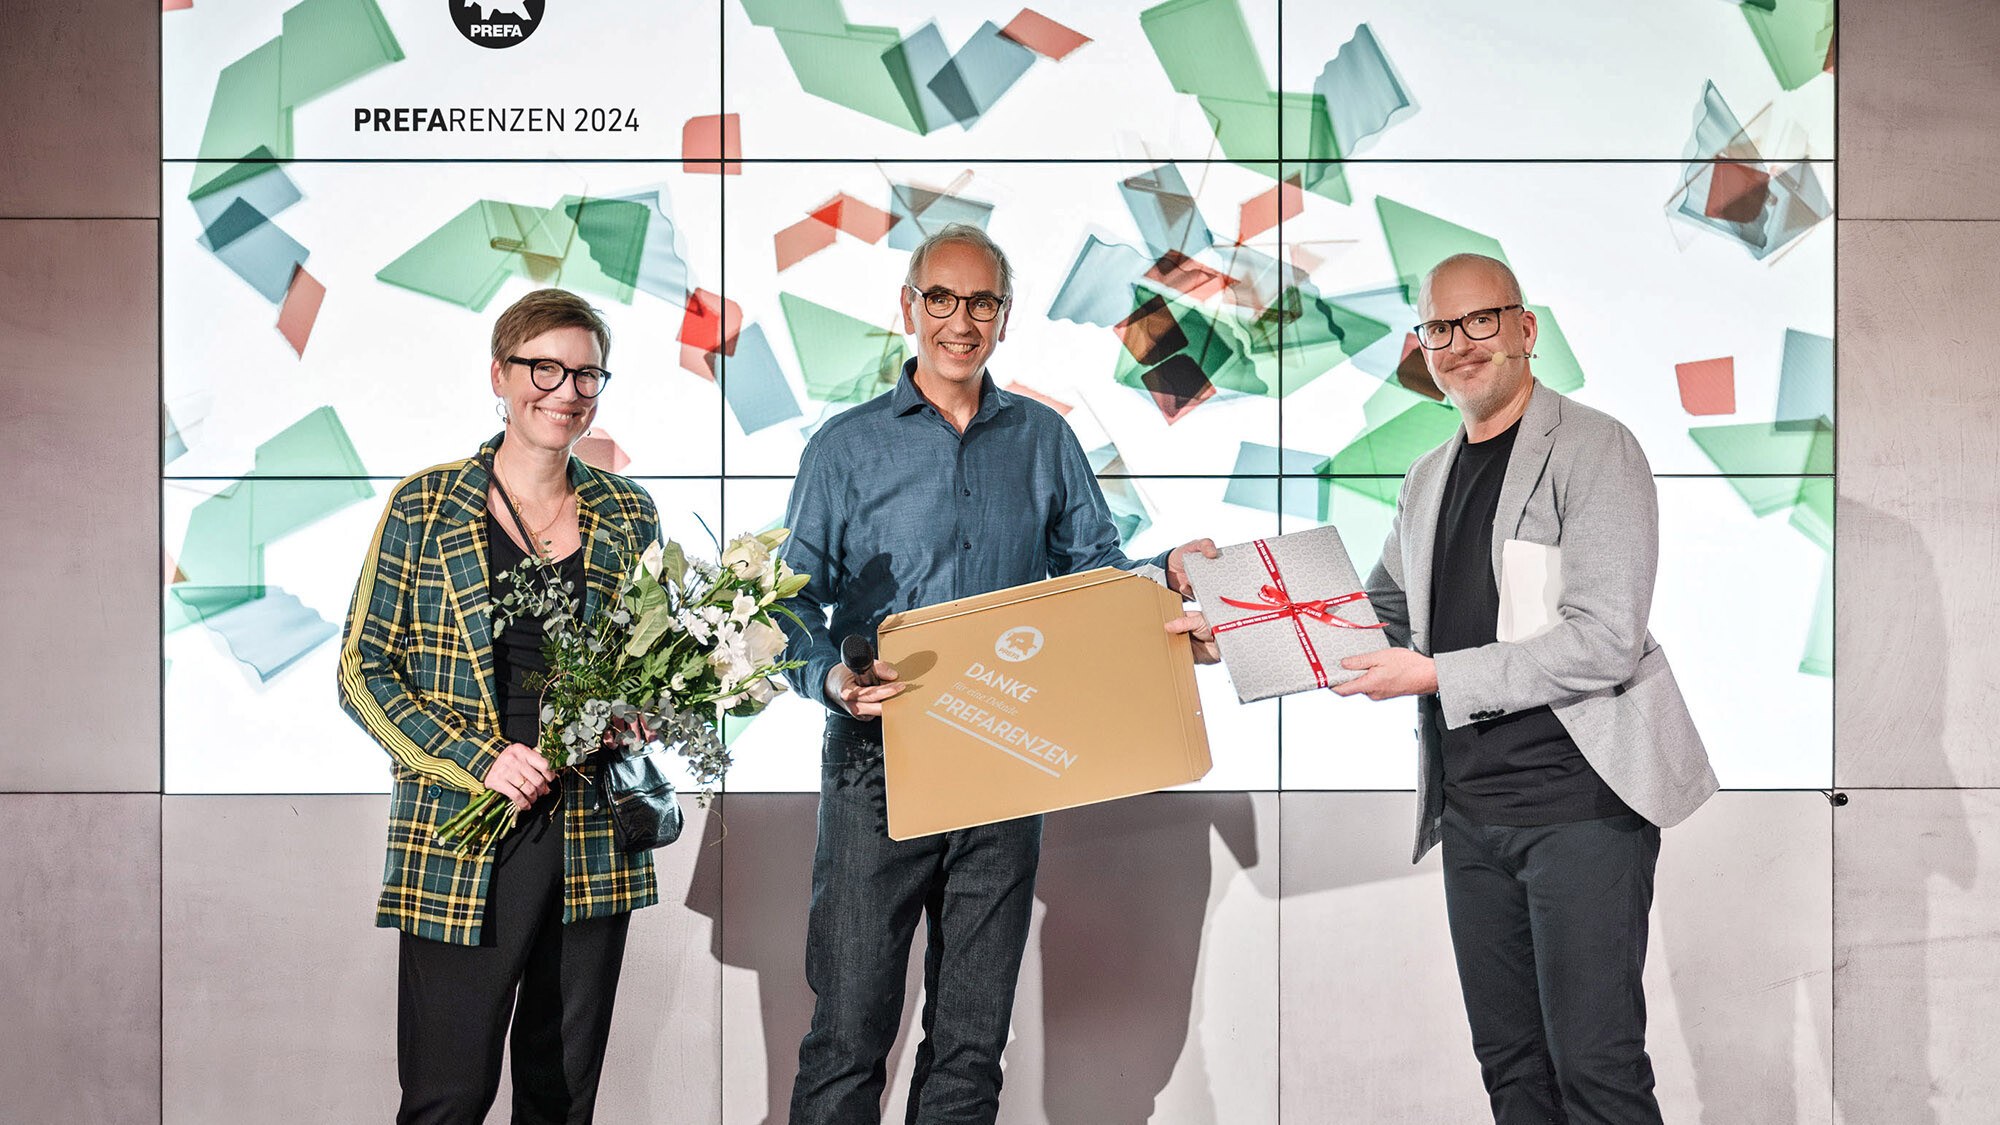 Fotografové Juliane Croce a Wolfgang Croce s mezinárodním marketingovým manažerem Jürgenem Jungmairem předali dárek před prezentační plochou.